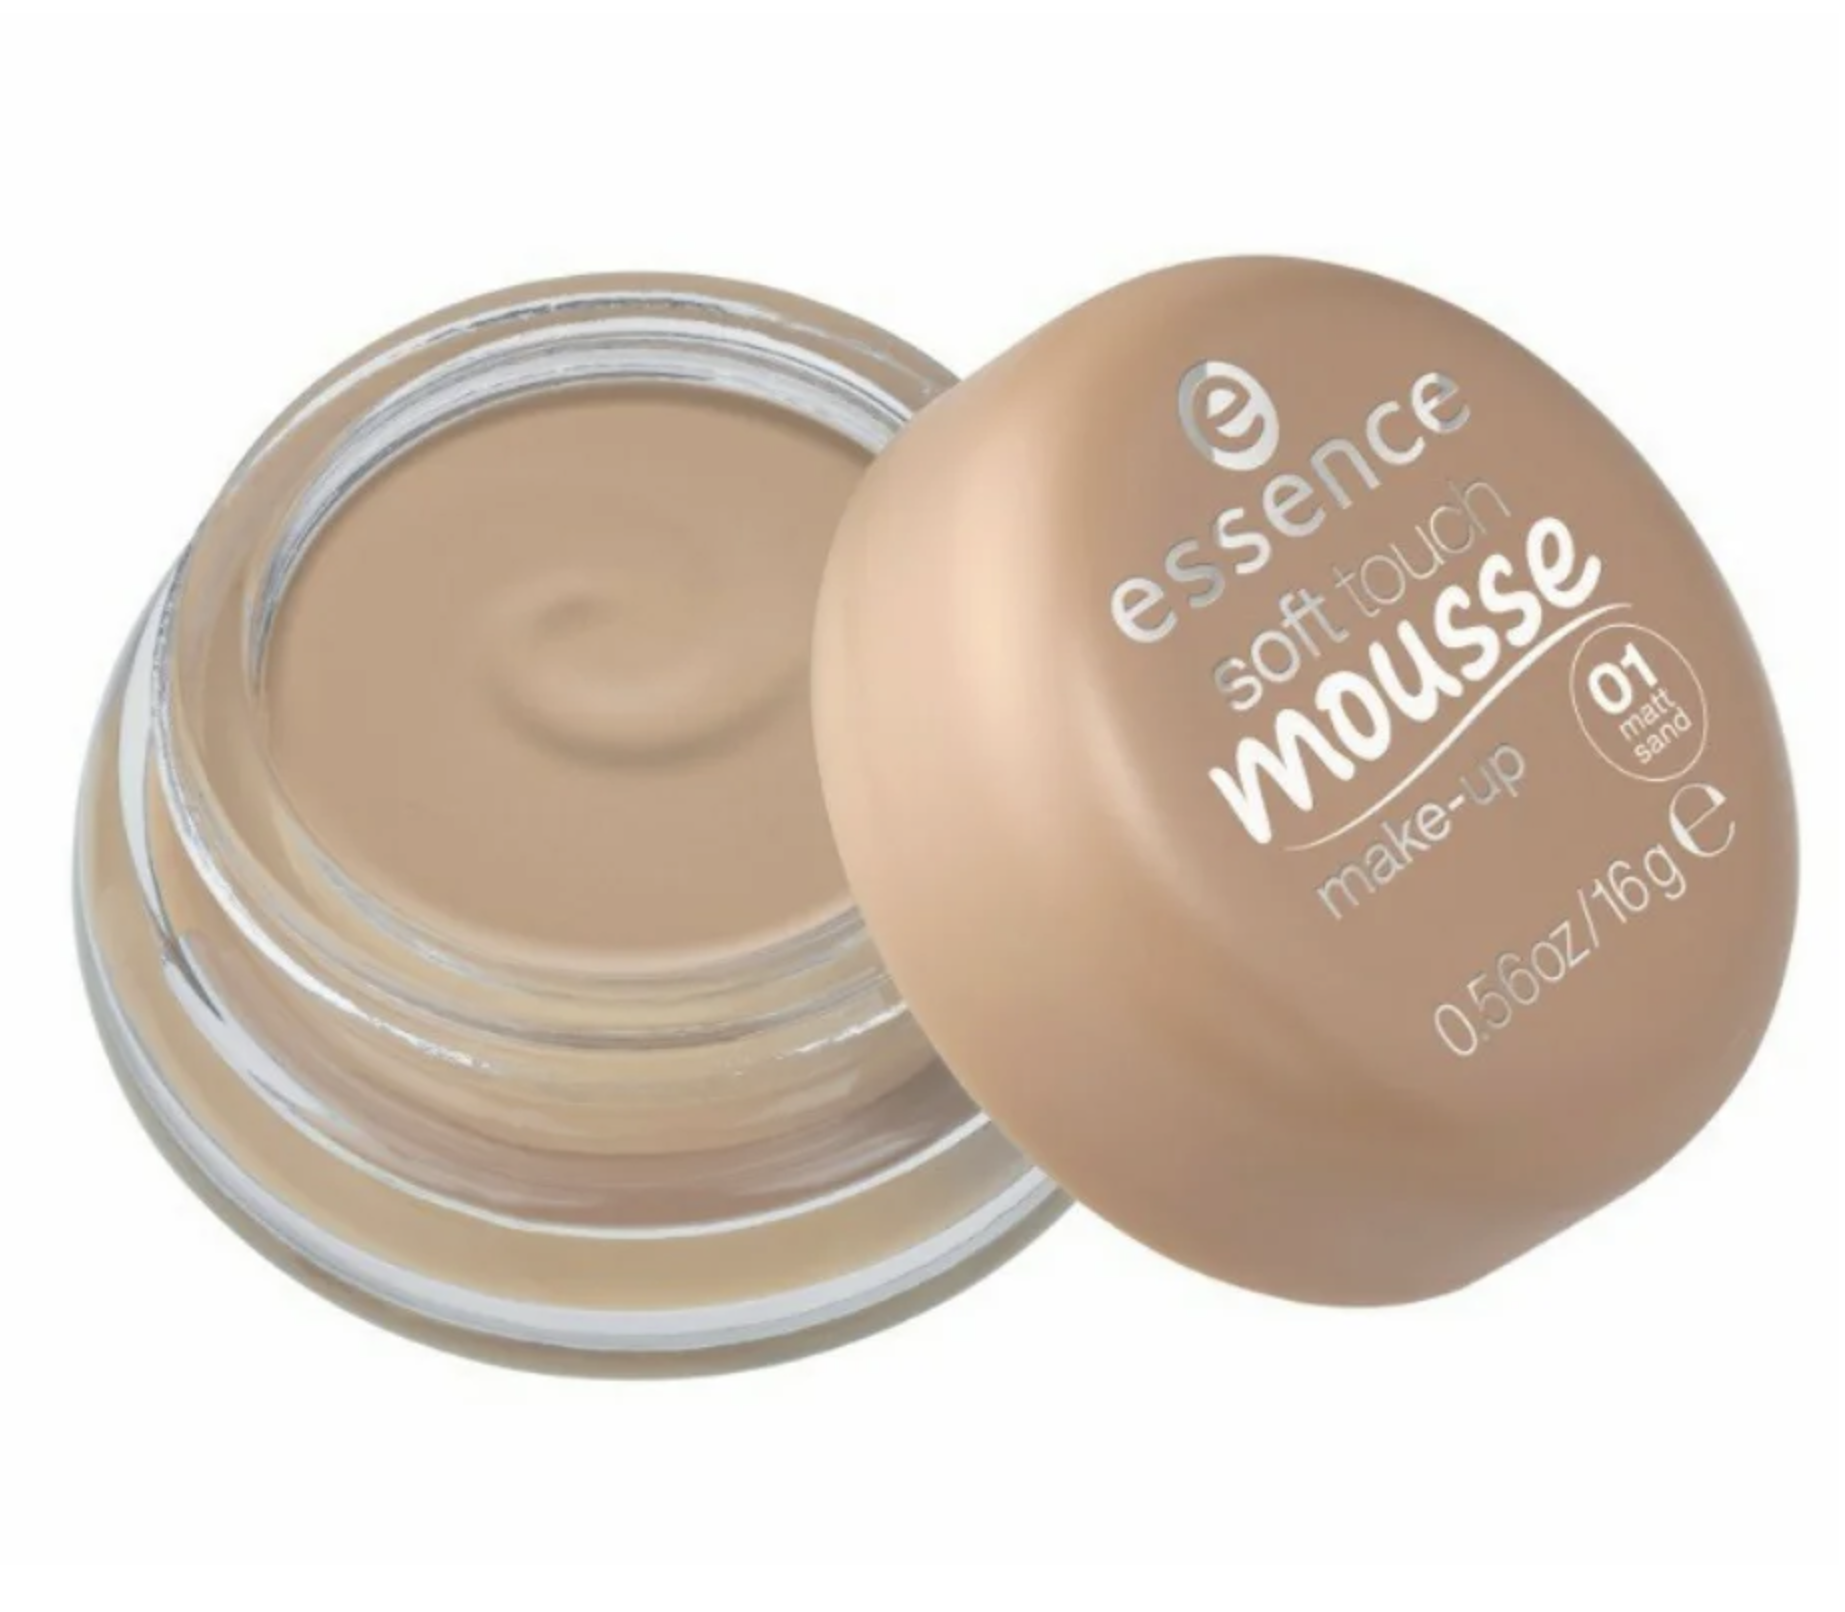   / Essence -  -   Soft Touch Mousse Make-Up 01 Matt Sand 16 